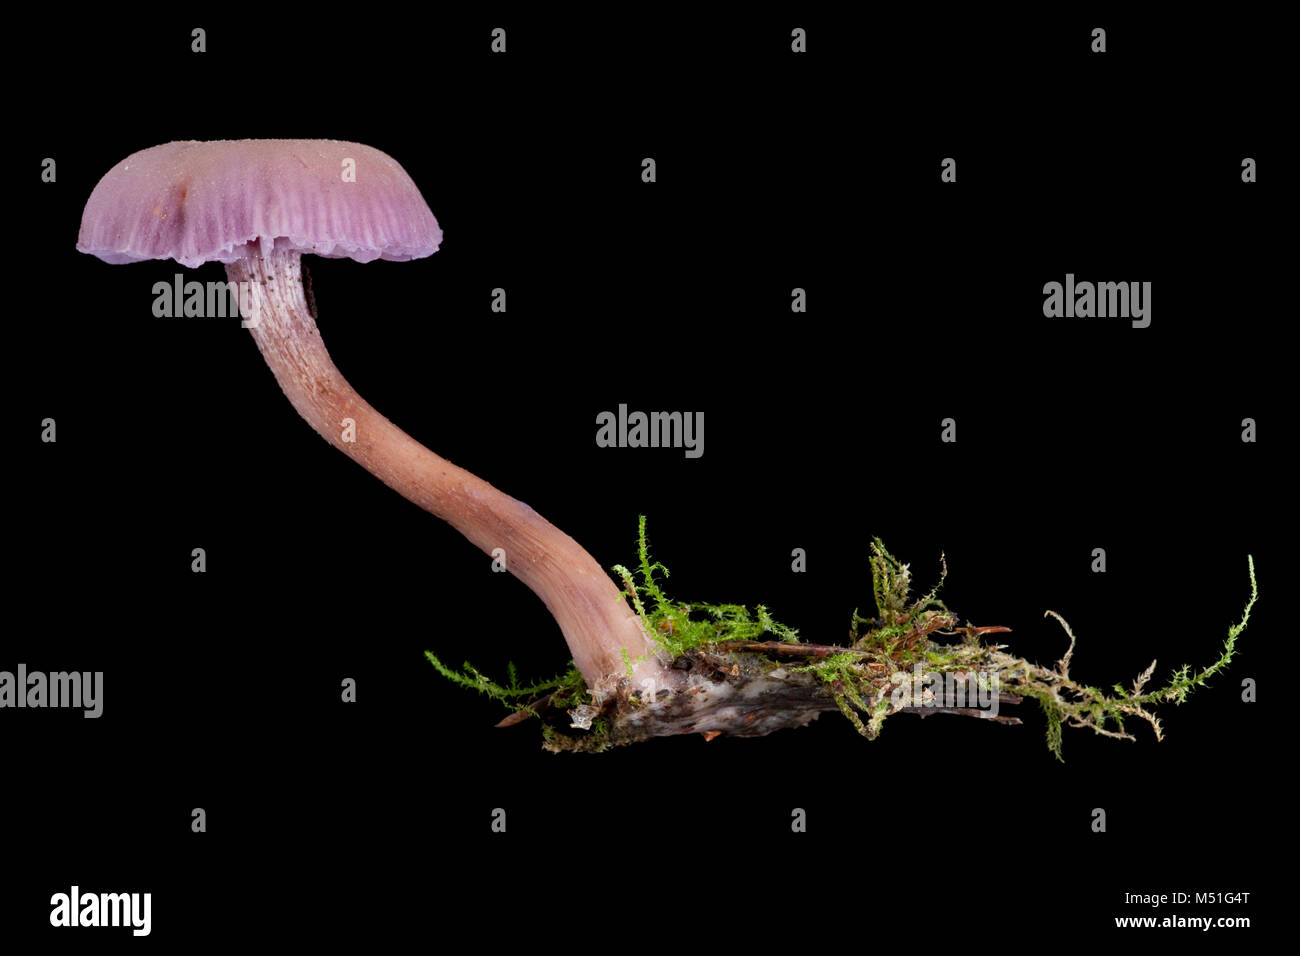 Studio photo d'améthyste, Laccaria amethystina champignon fourbe. Dorset England UK GO sur un fond noir Banque D'Images